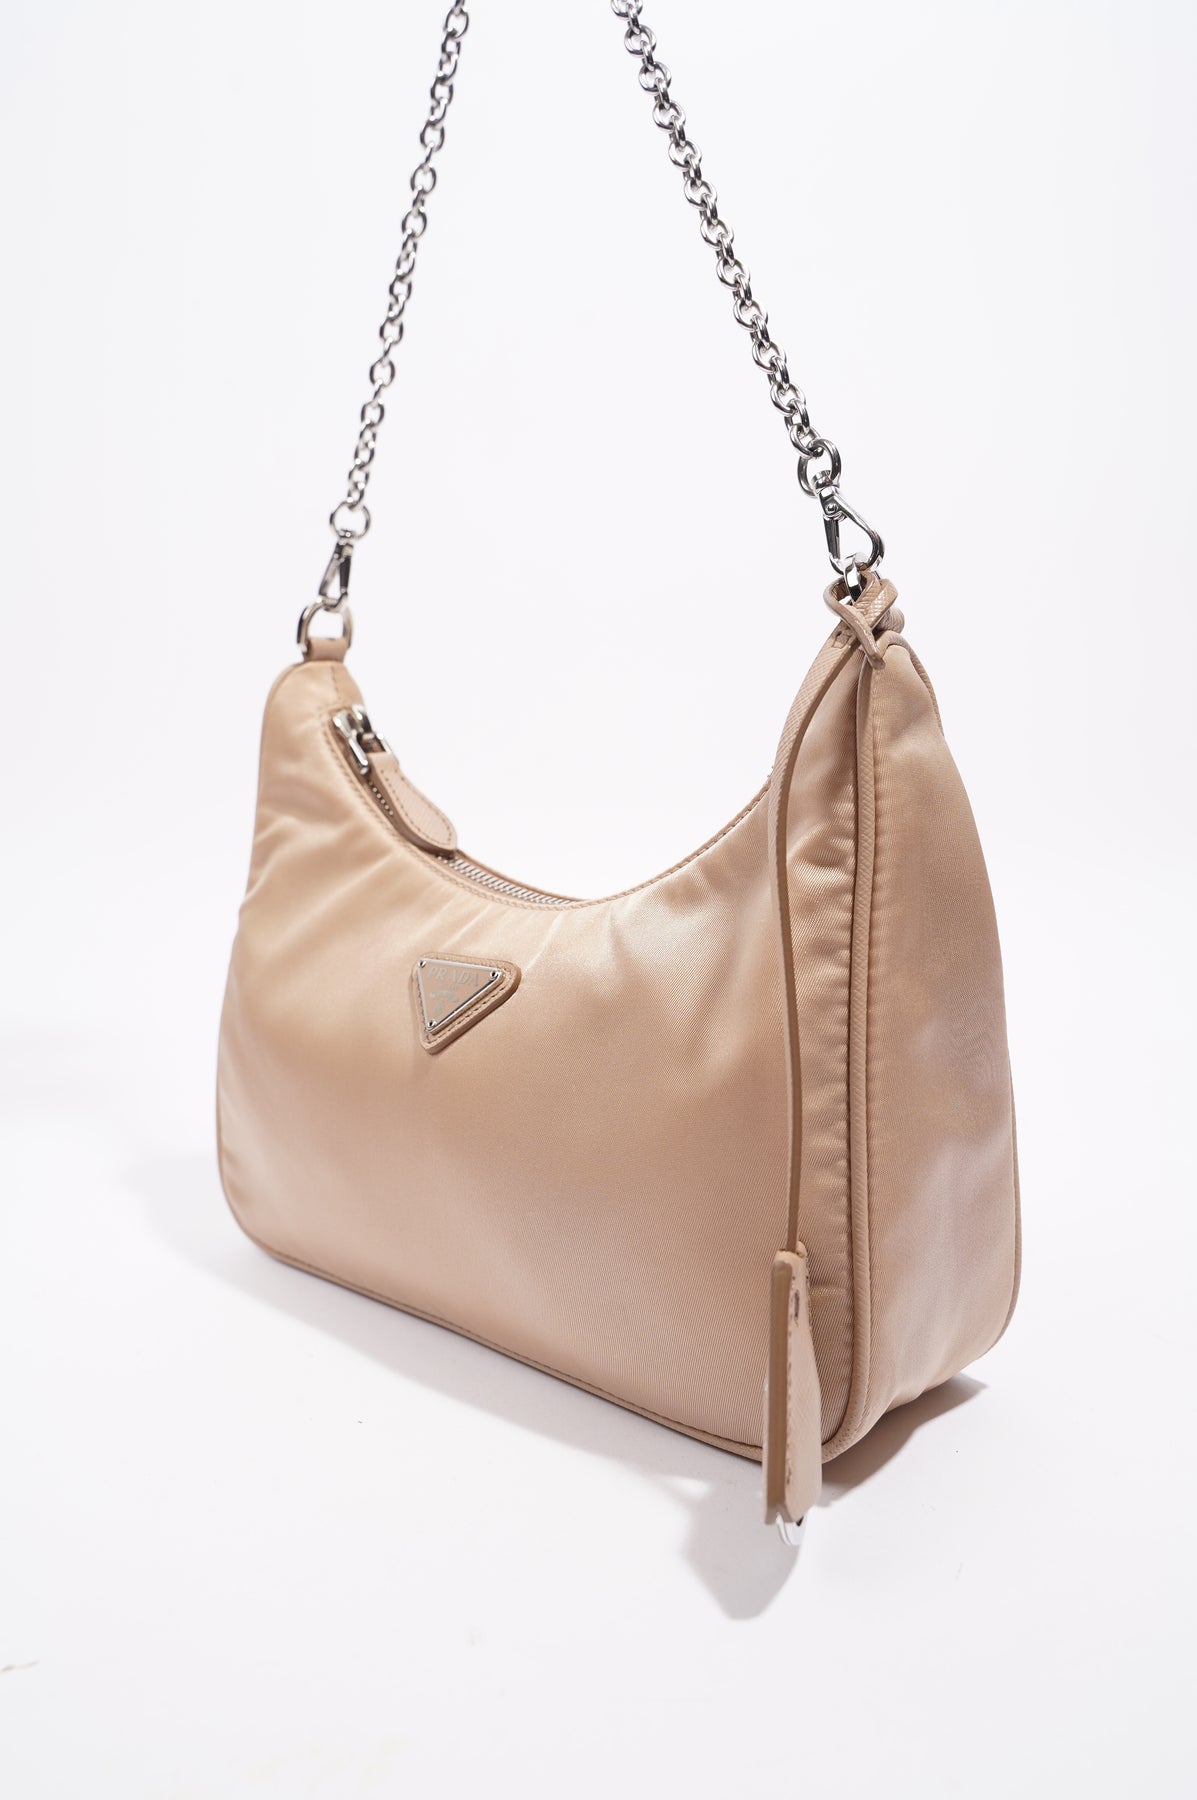 Prada Nylon and Saffiano Leather Mini-Bag Cameo Beige in Nylon and